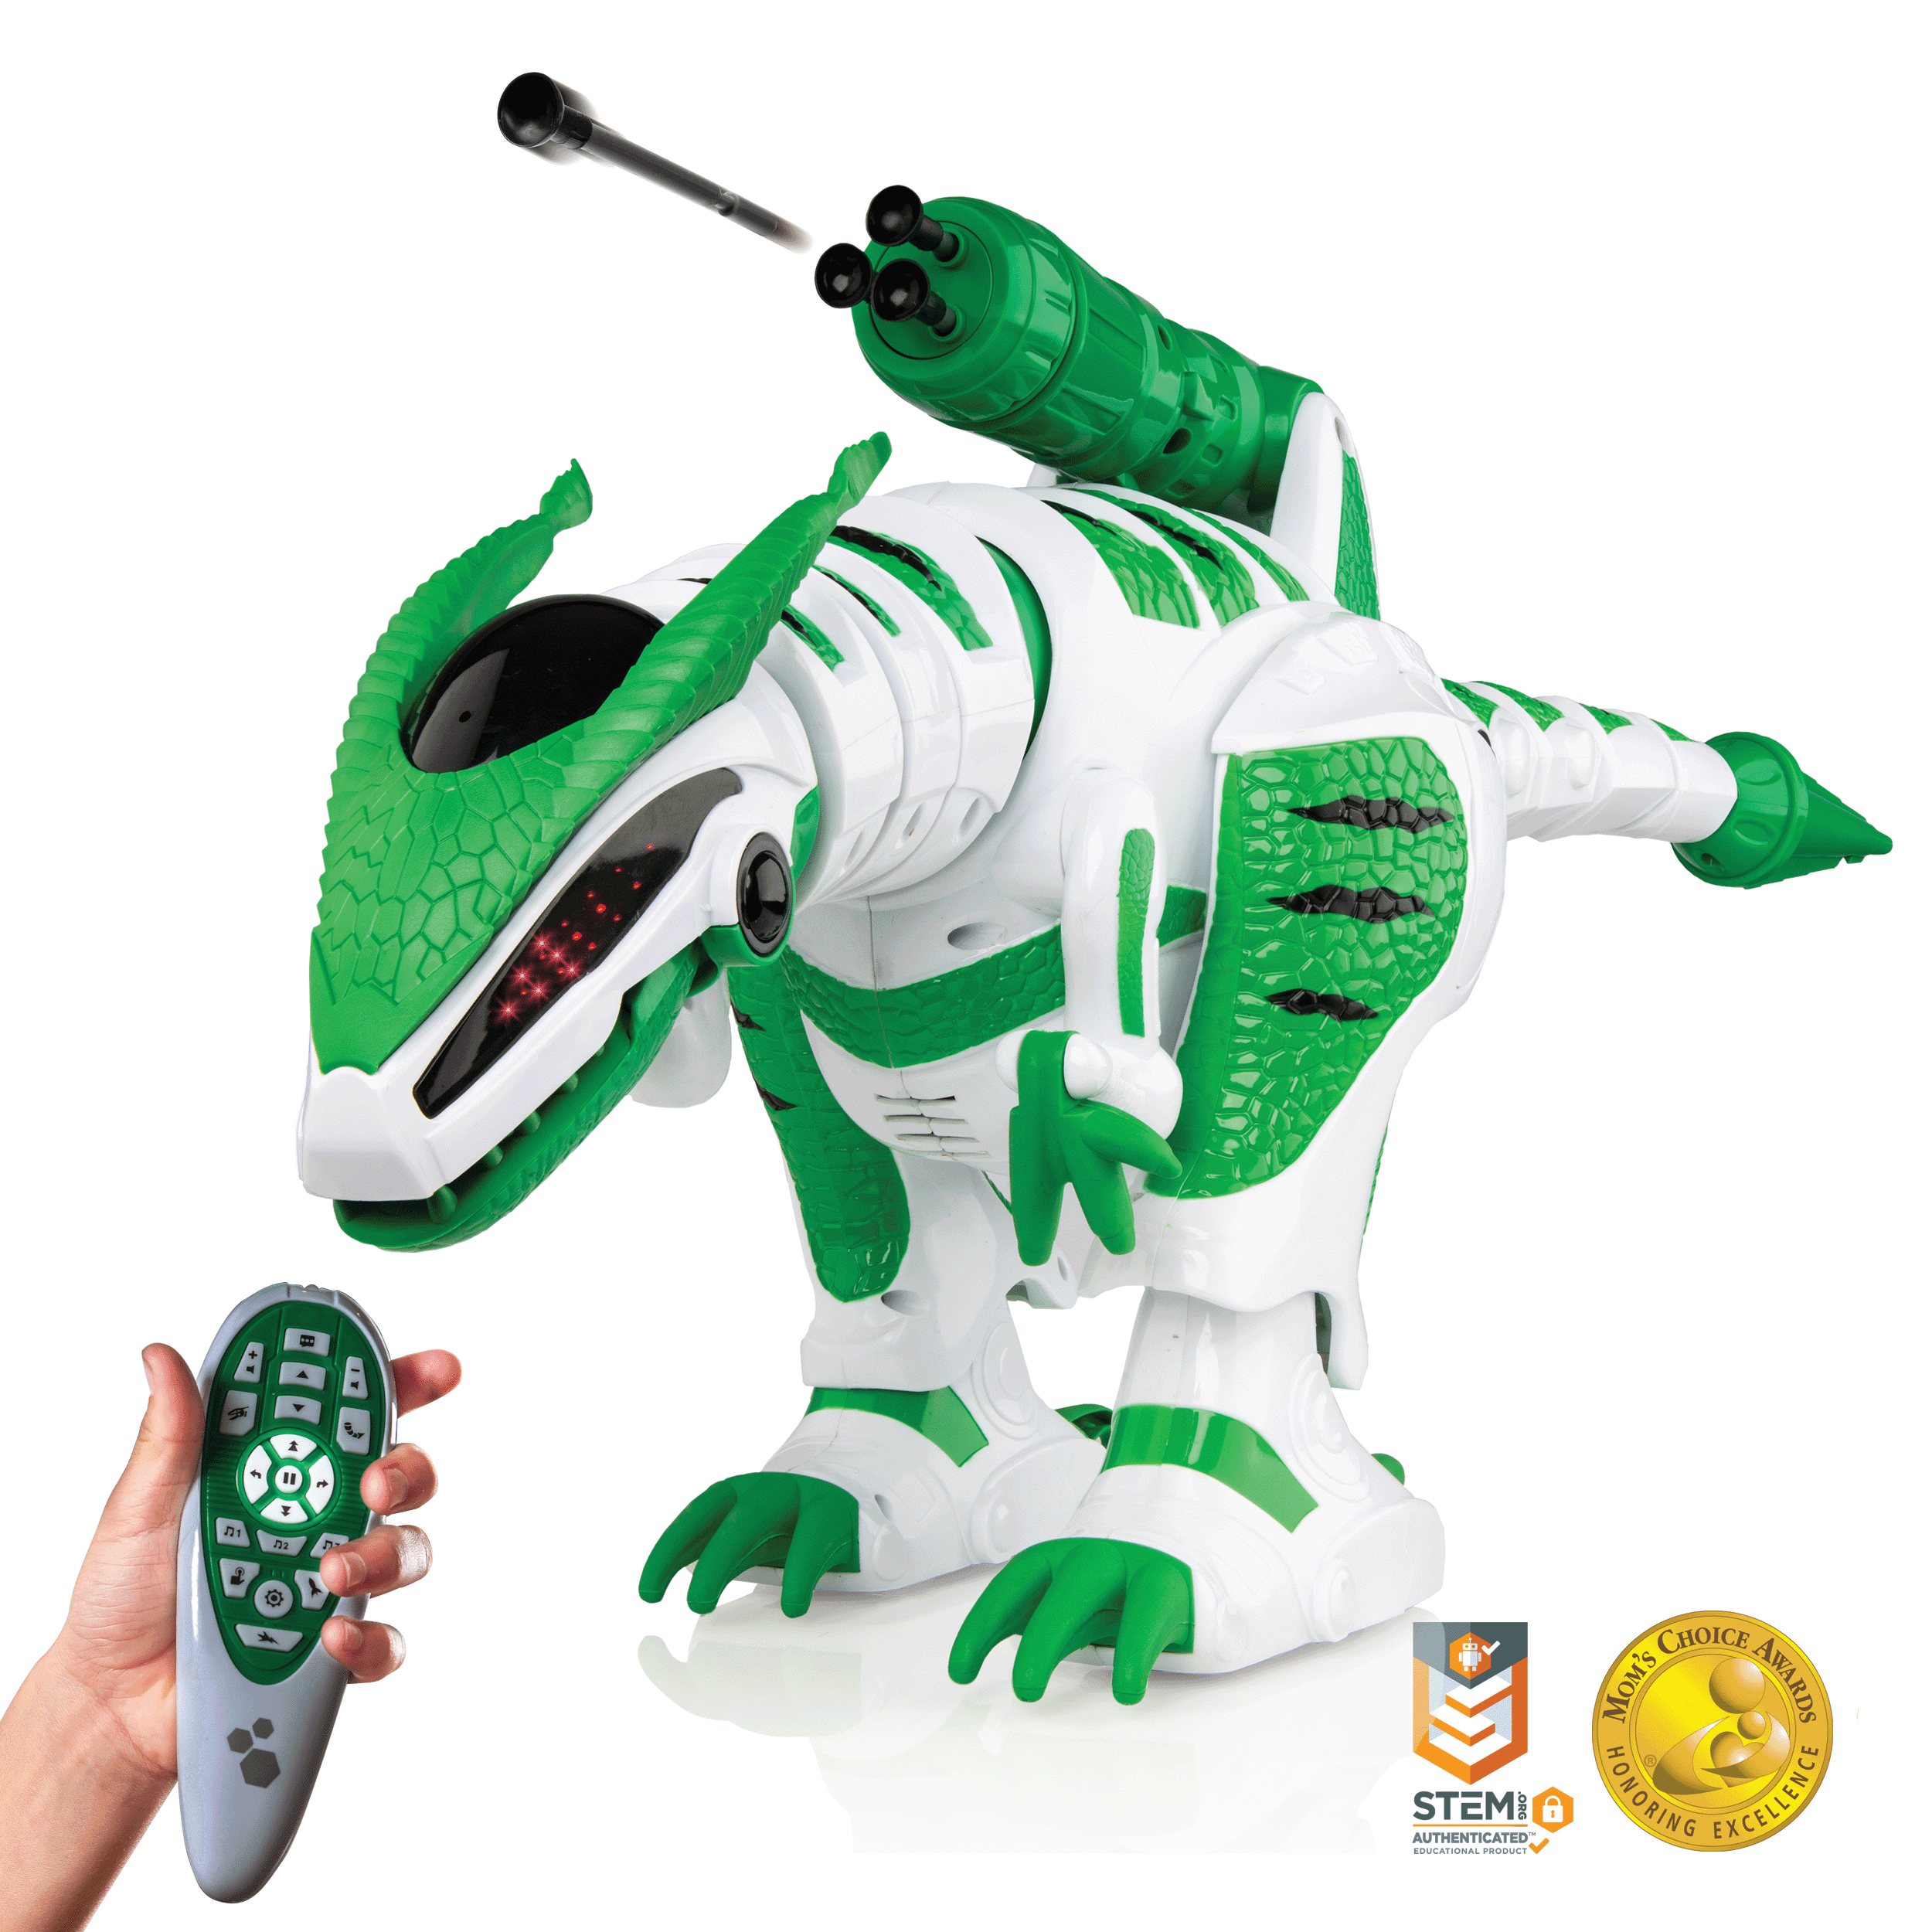 Power Your Fun Intellisaur Smart T-Rex Battle Dinosaur Robot